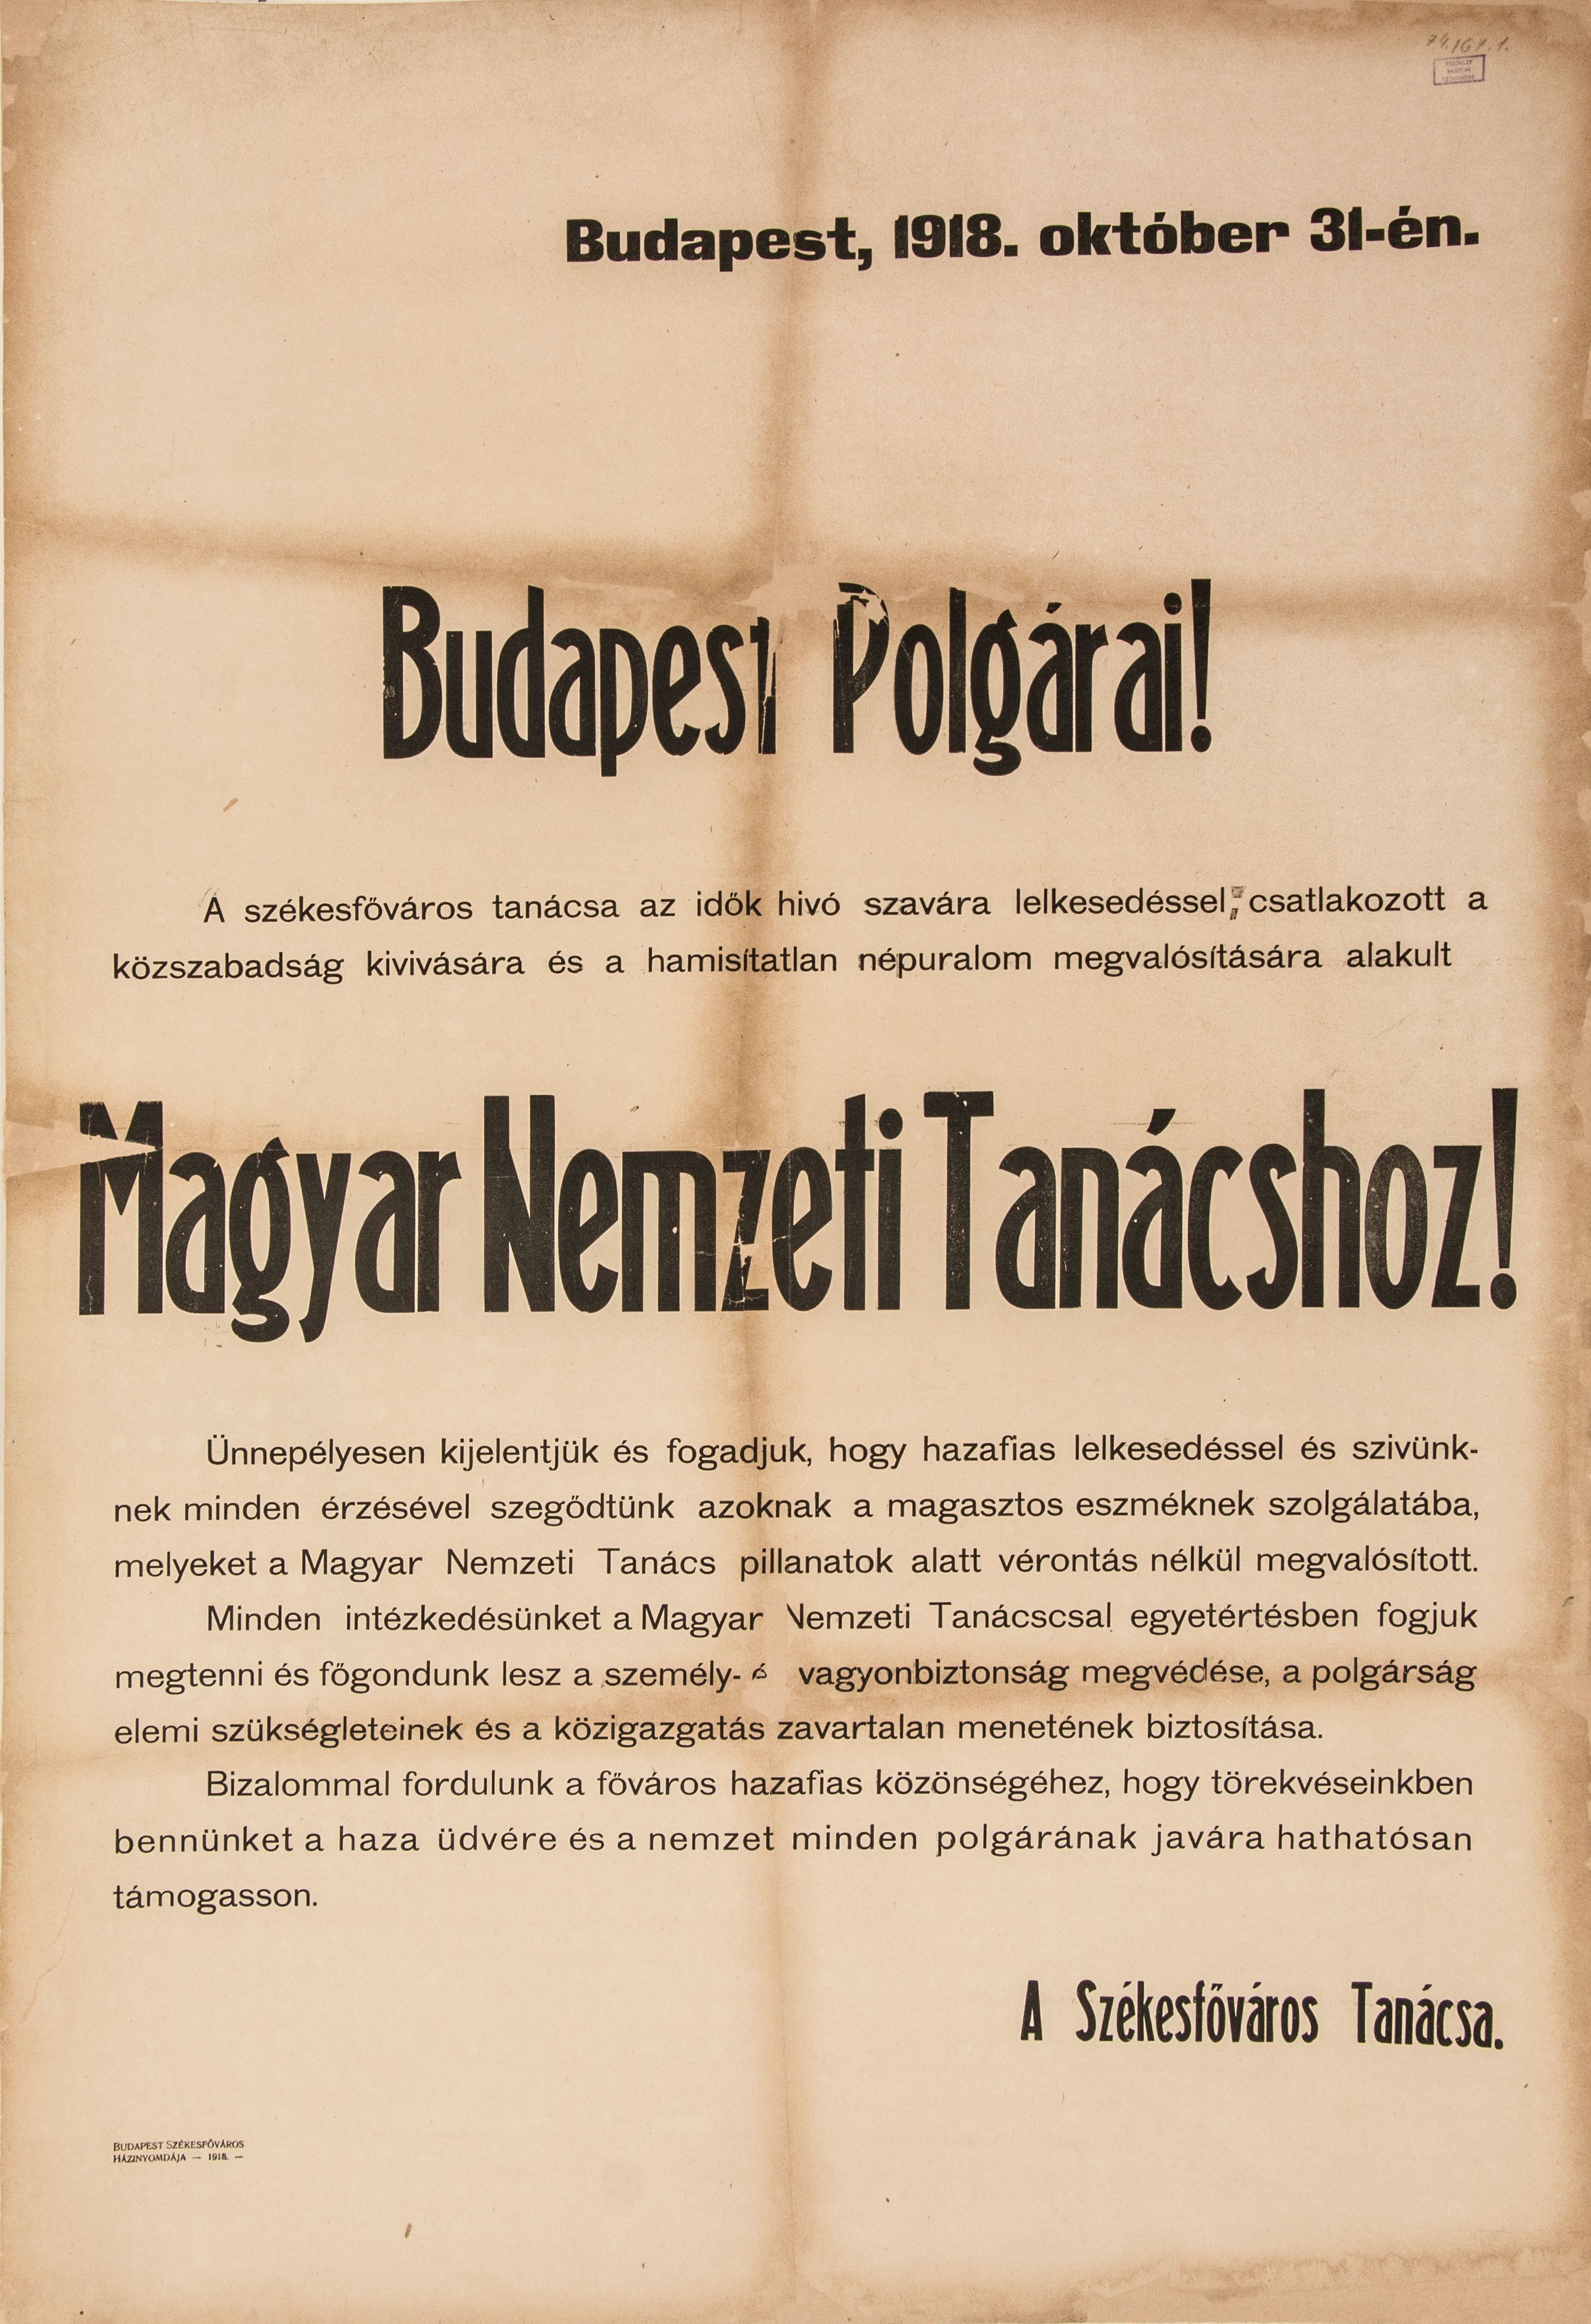 A Magyar Nemzeti Tanács kiáltványa Budapest polgáraihoz, 1918.10.31. (Ferenczy Múzeumi Centrum CC BY-NC-SA)